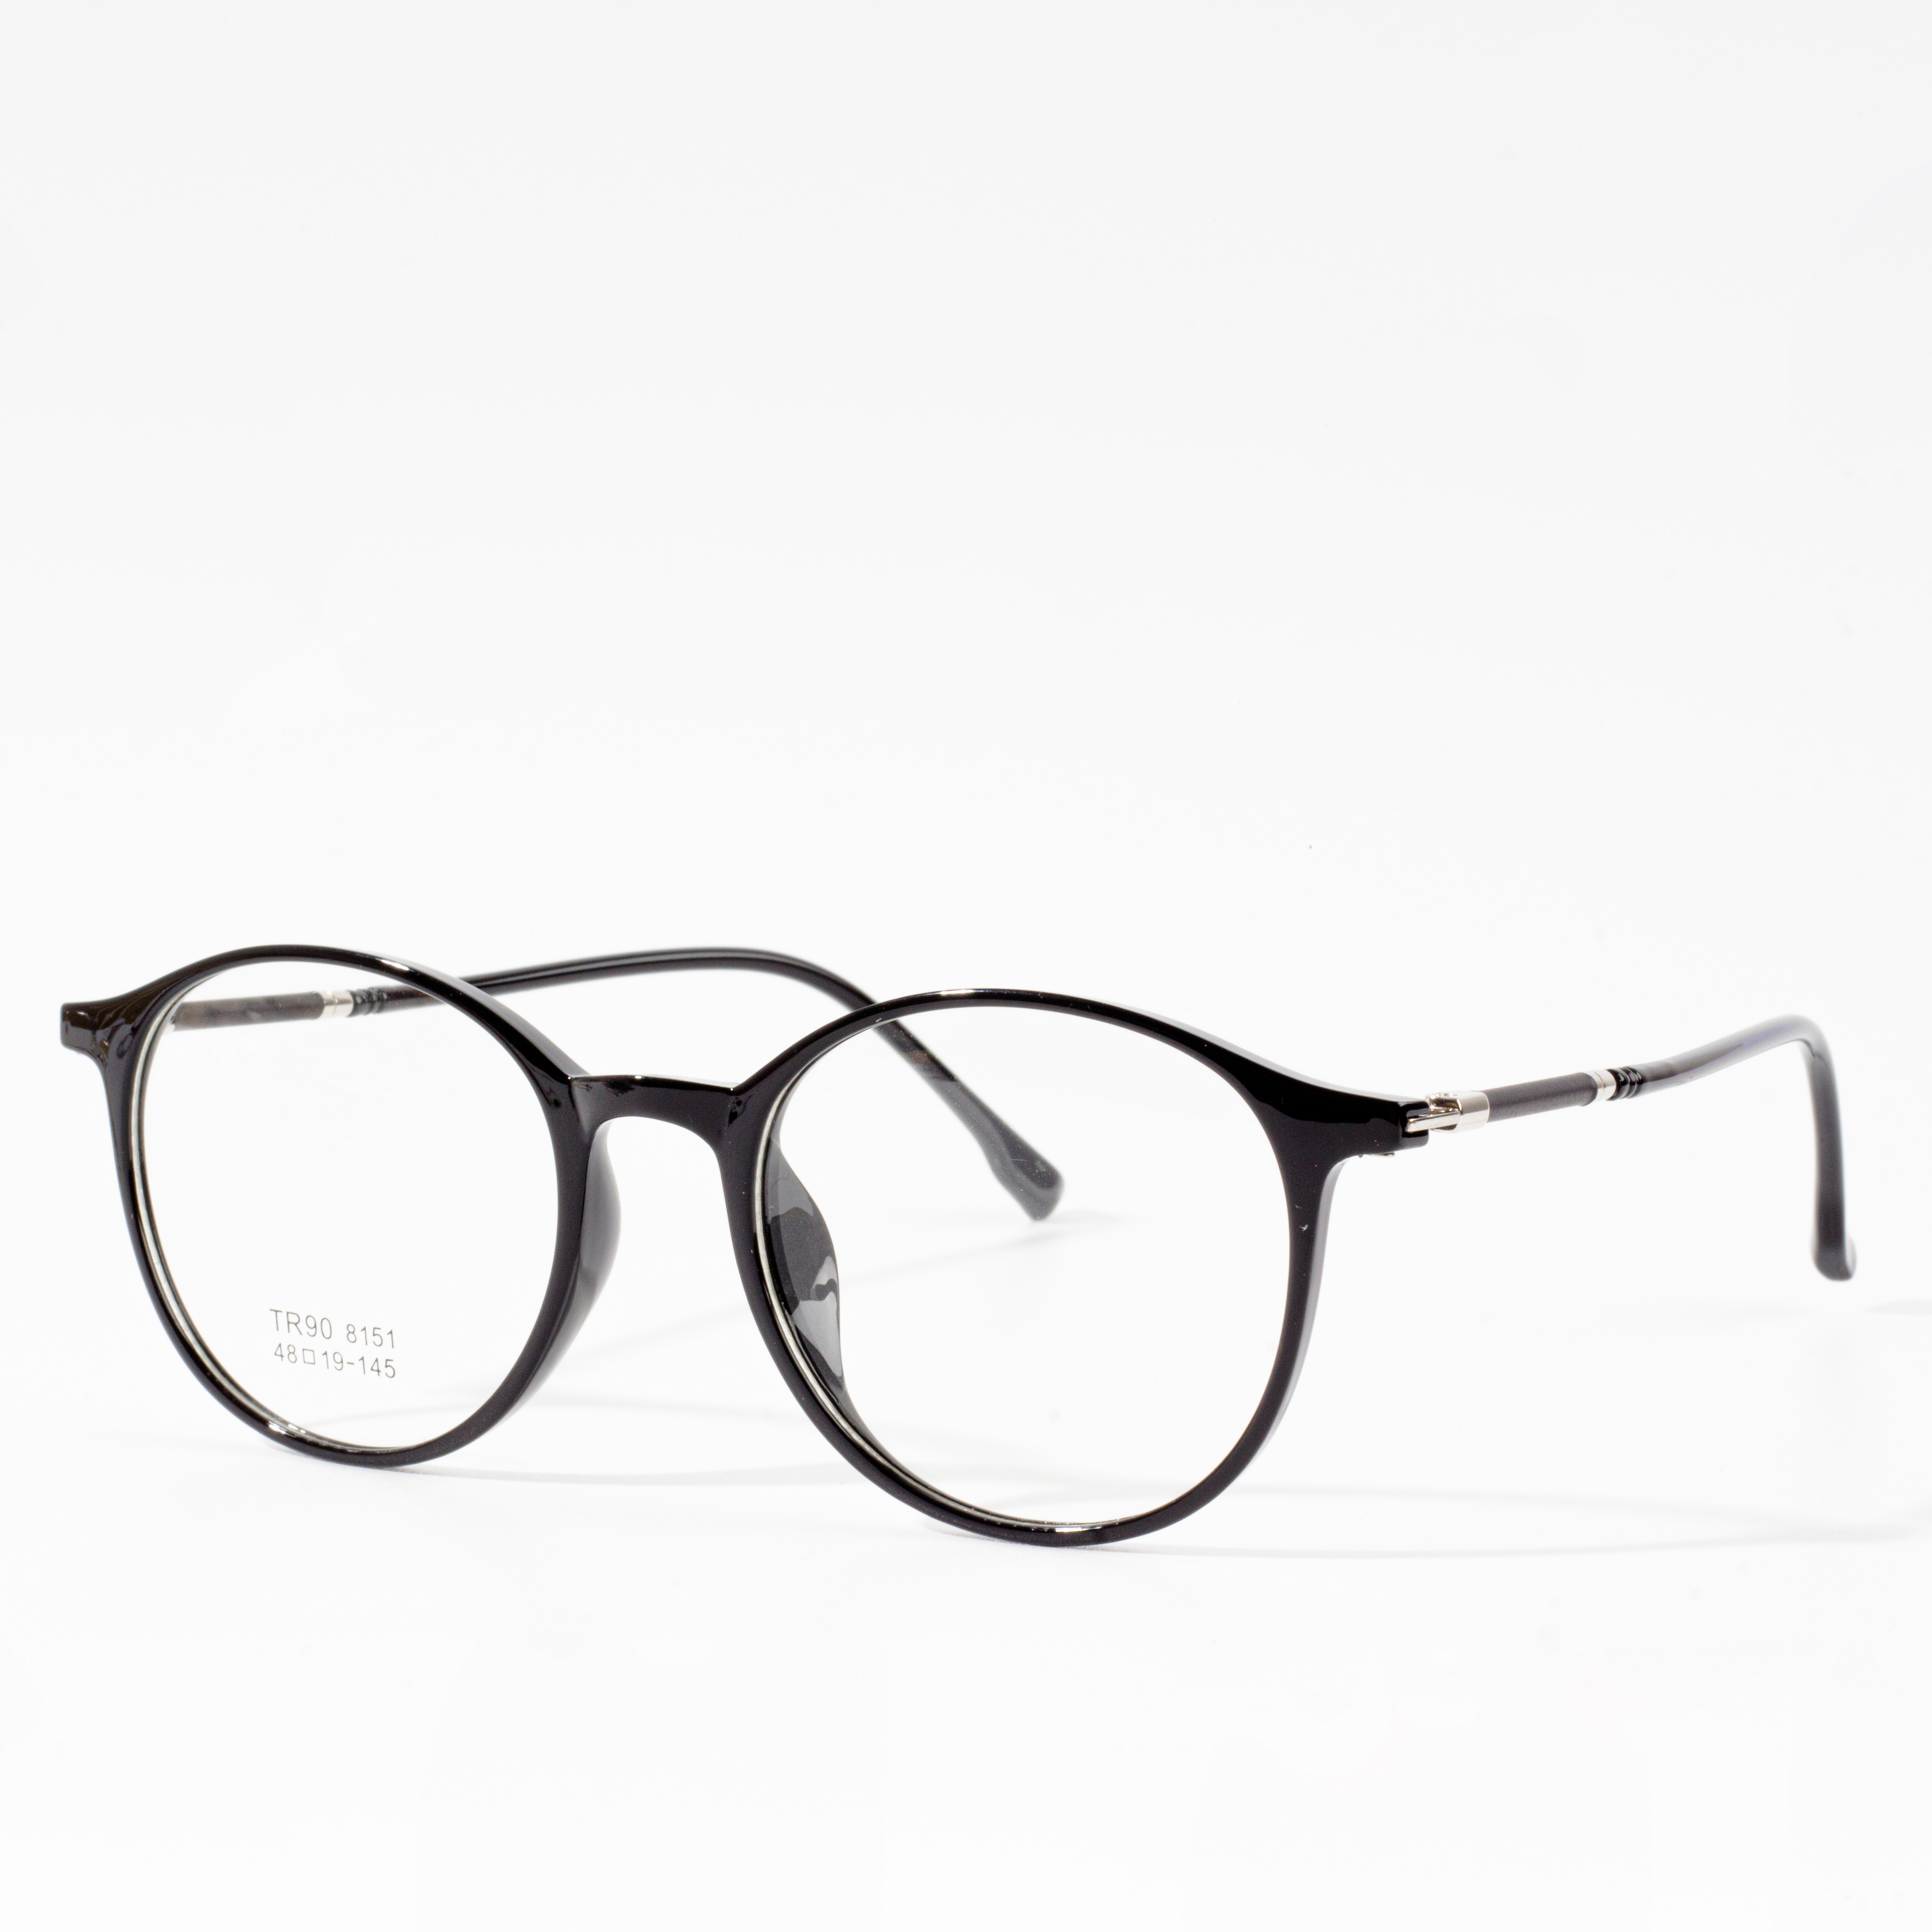 Мужские и женские дизайнерские оправы — Eyeglasses.com 广告· https://www.eyeglasses.com/ (888) 896-3885 Покупайте дизайнерские оправы ведущих мировых брендов для очков за полцены сегодня.